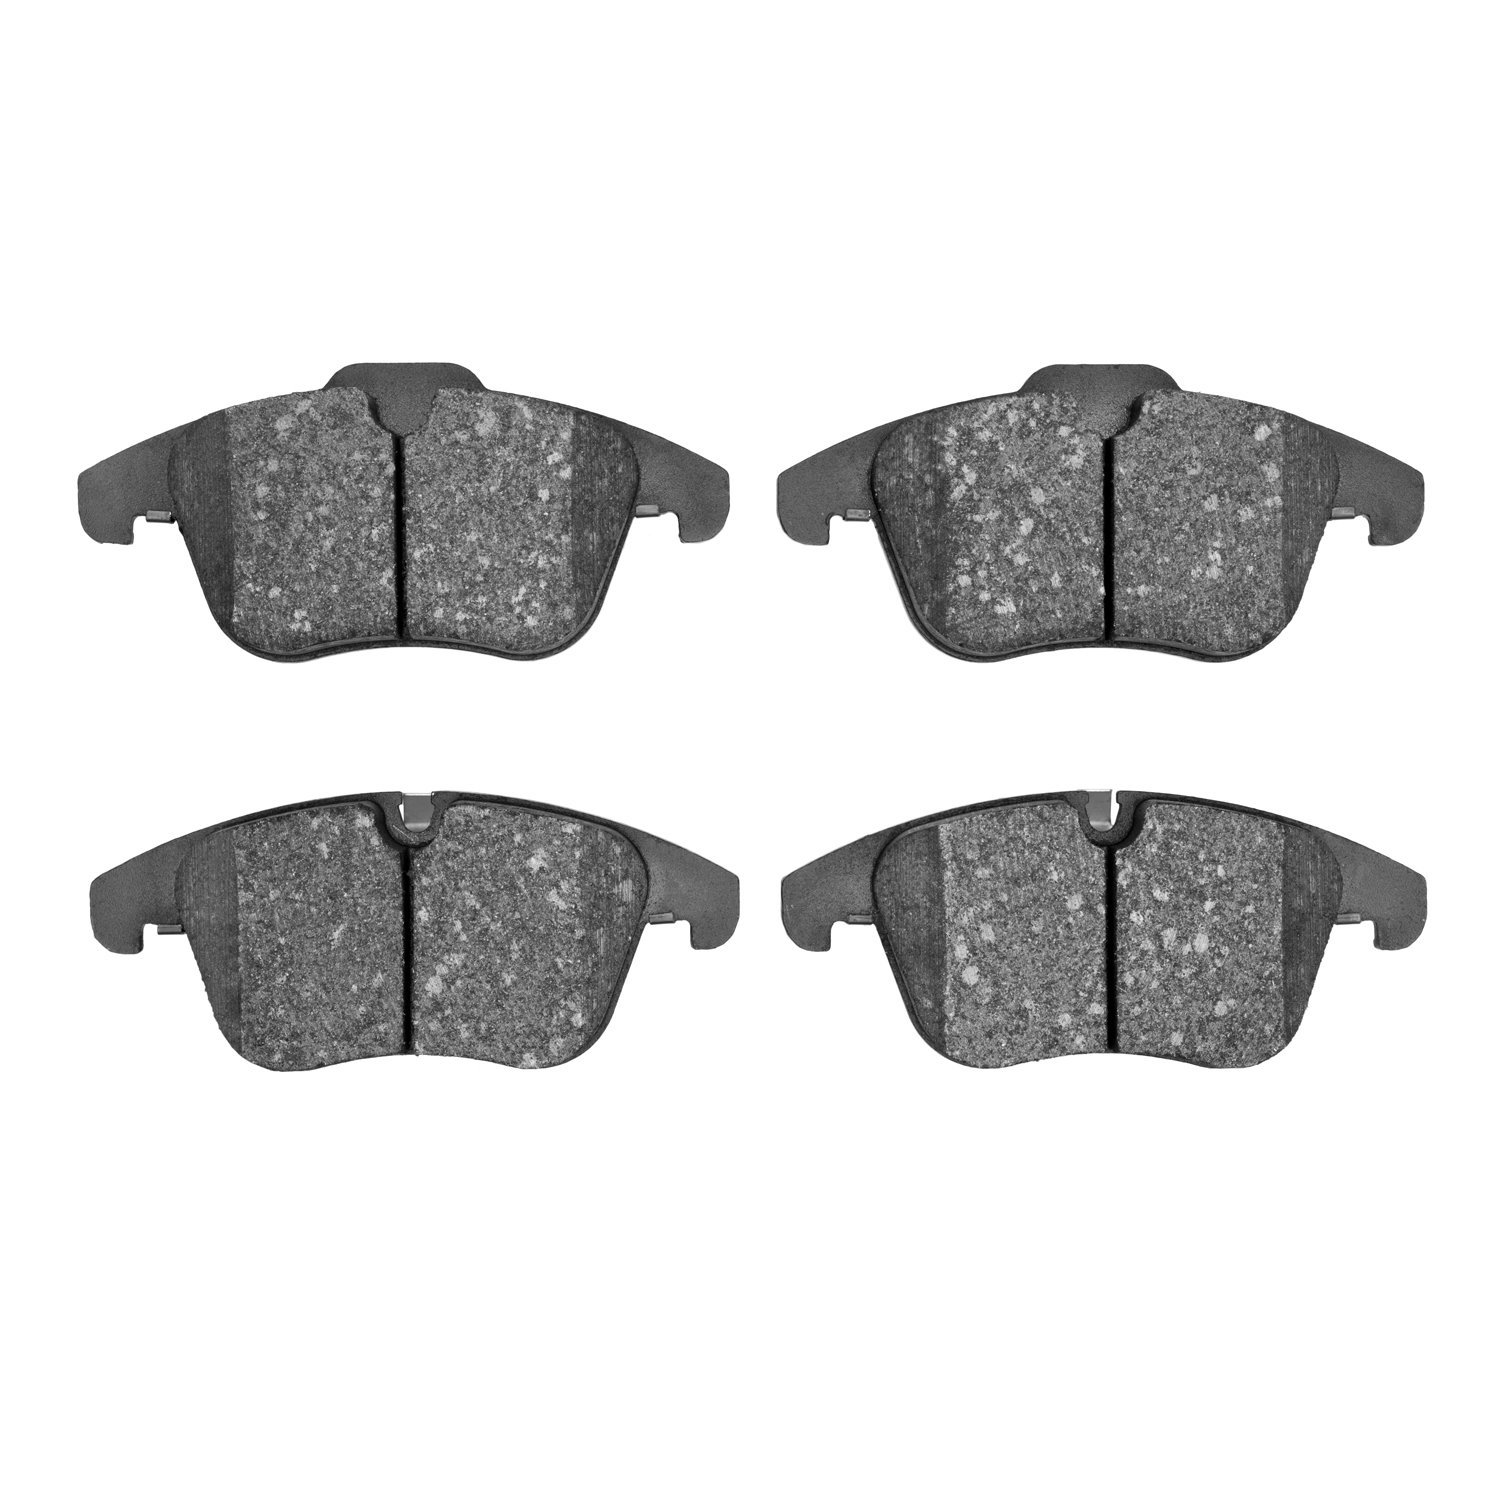 Ceramic Brake Pads, 2006-2018 Fits Multiple Makes/Models, Position: Front